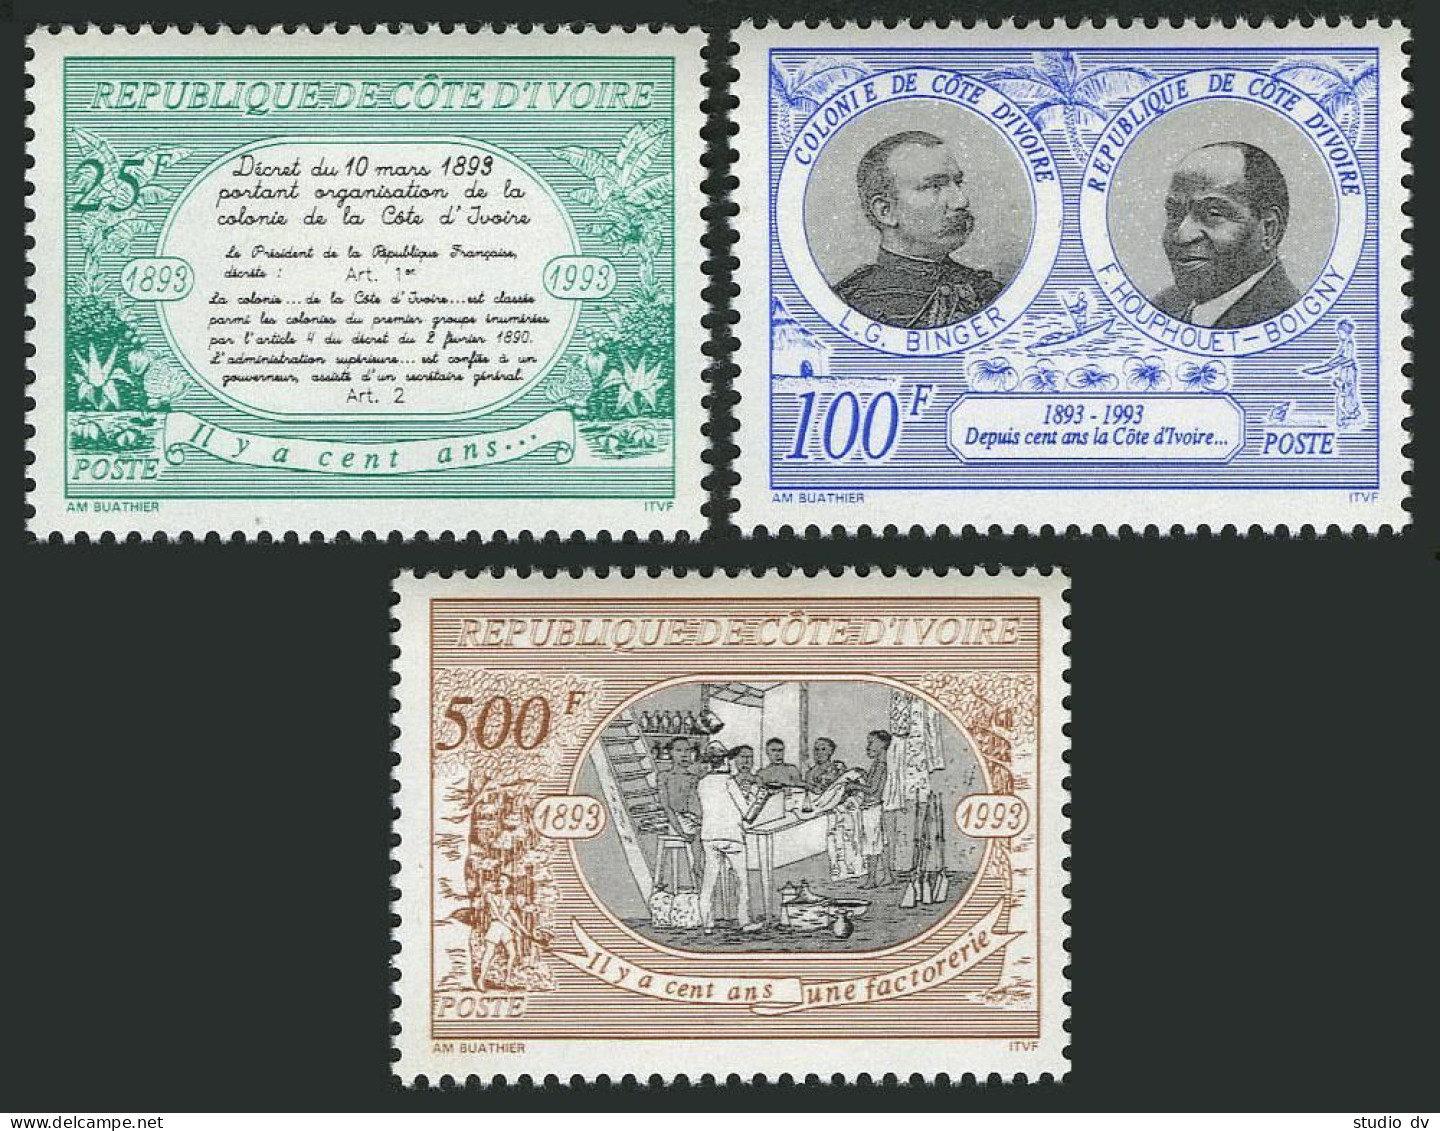 Ivory Coast 939-941,MNH.Michel 1090-1100. Ivory Coast Colony,centenary,1993. - Ivory Coast (1960-...)